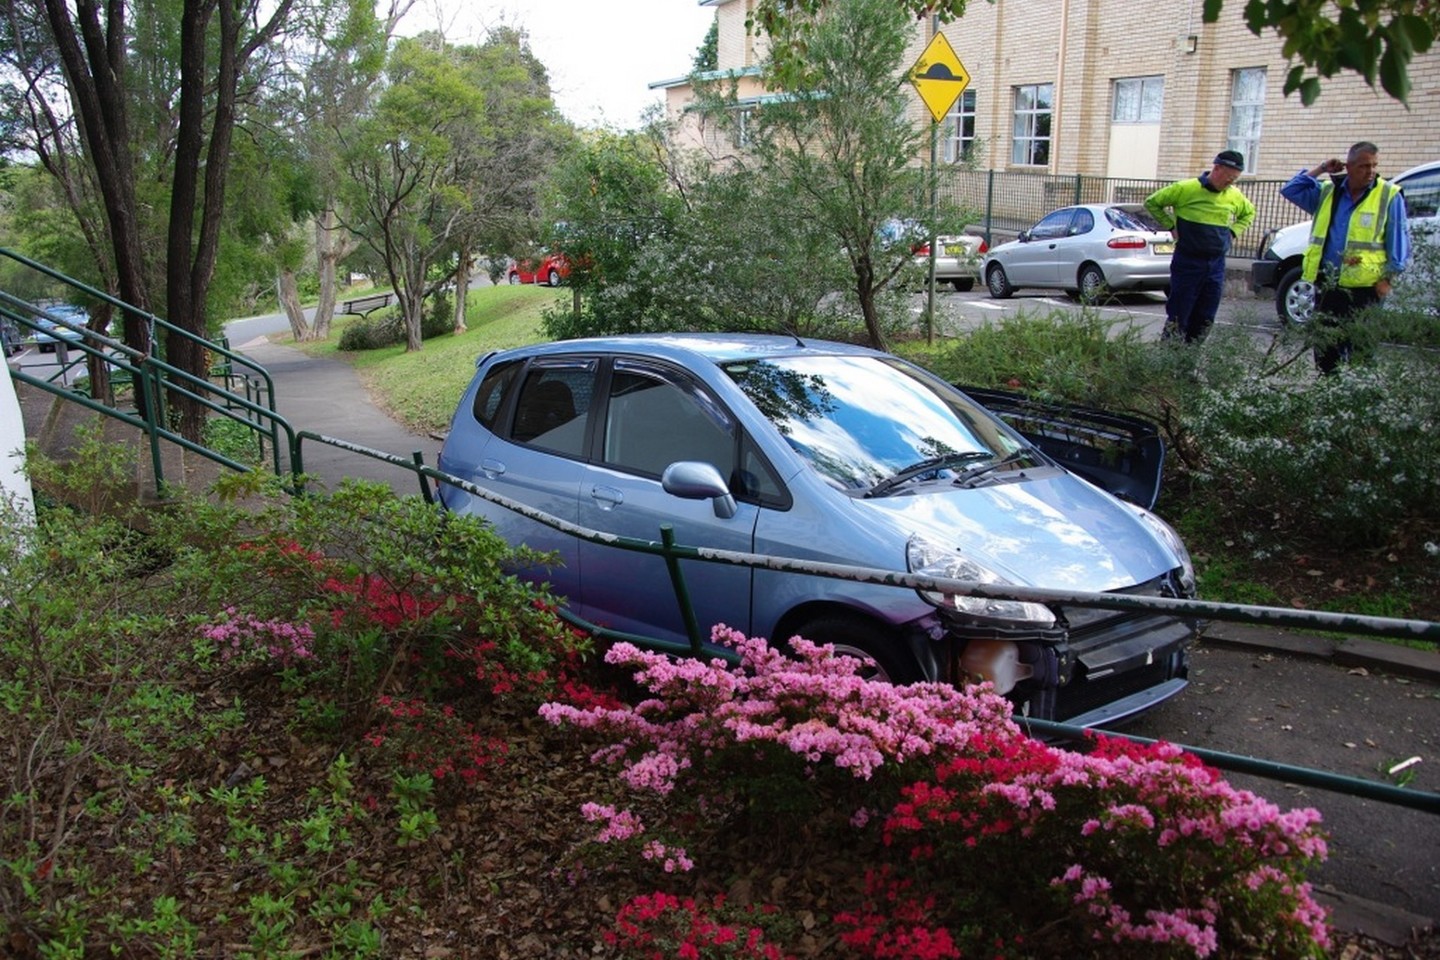 Beprotiškiausios automobilių avarijos nustebins ir visko mačiusius vairuotojus.<br>Blue Mountains Library/Flickr.com nuotr.